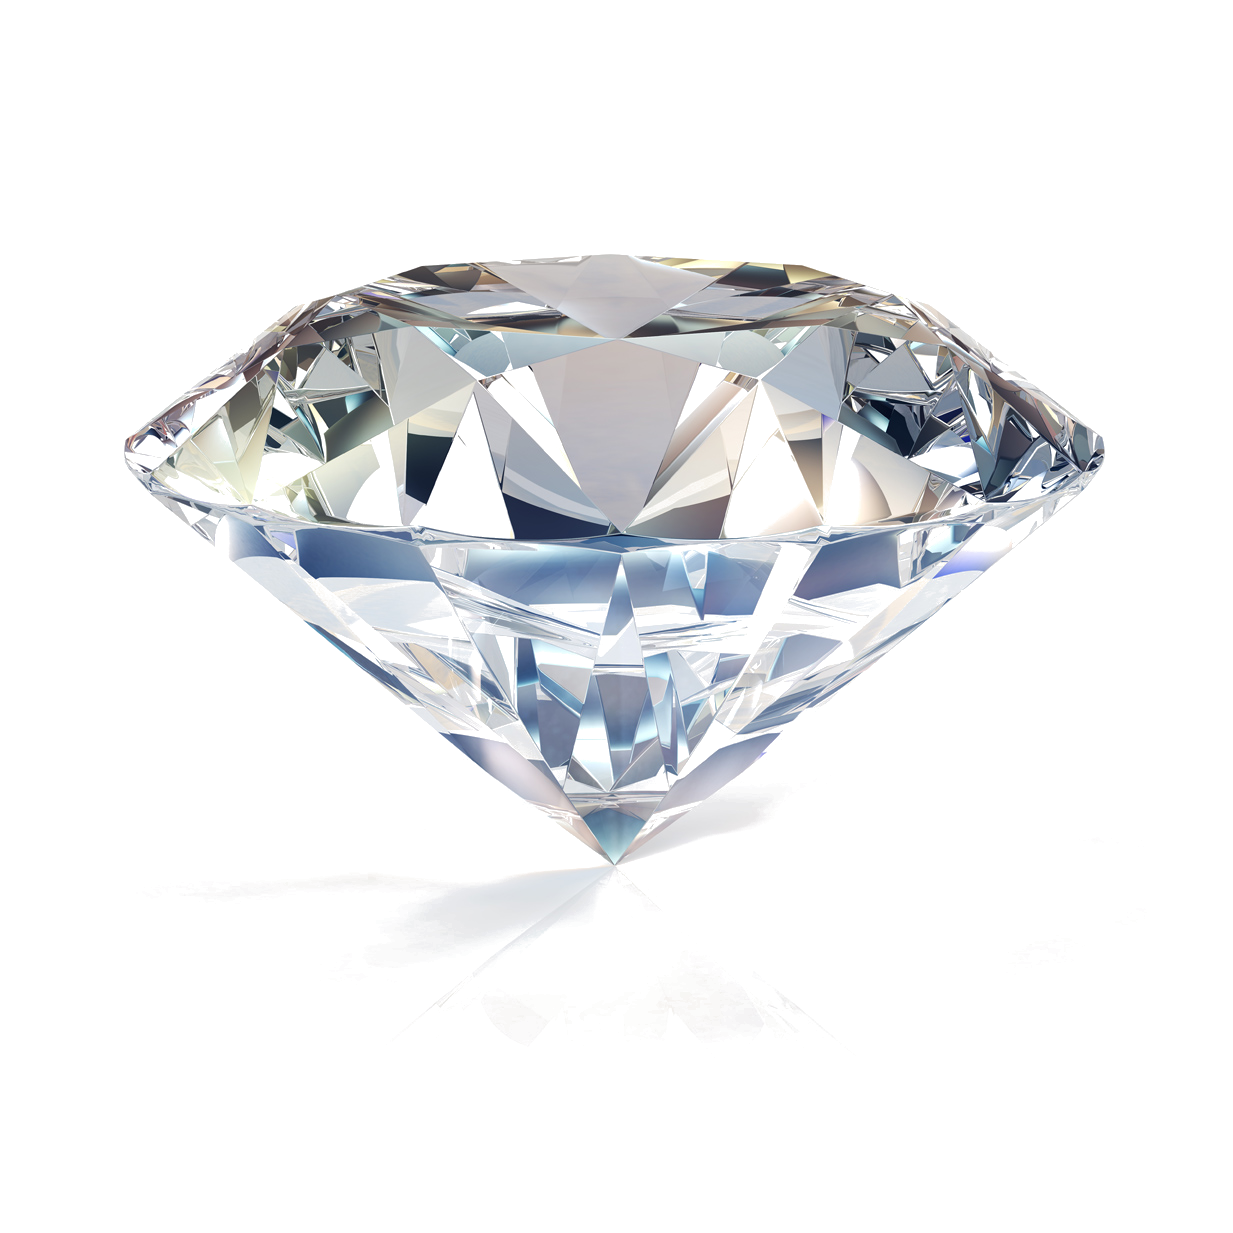 Diamant im Brillantschliff in der Seitenansicht mit Krone, Gürtel und Pavillion